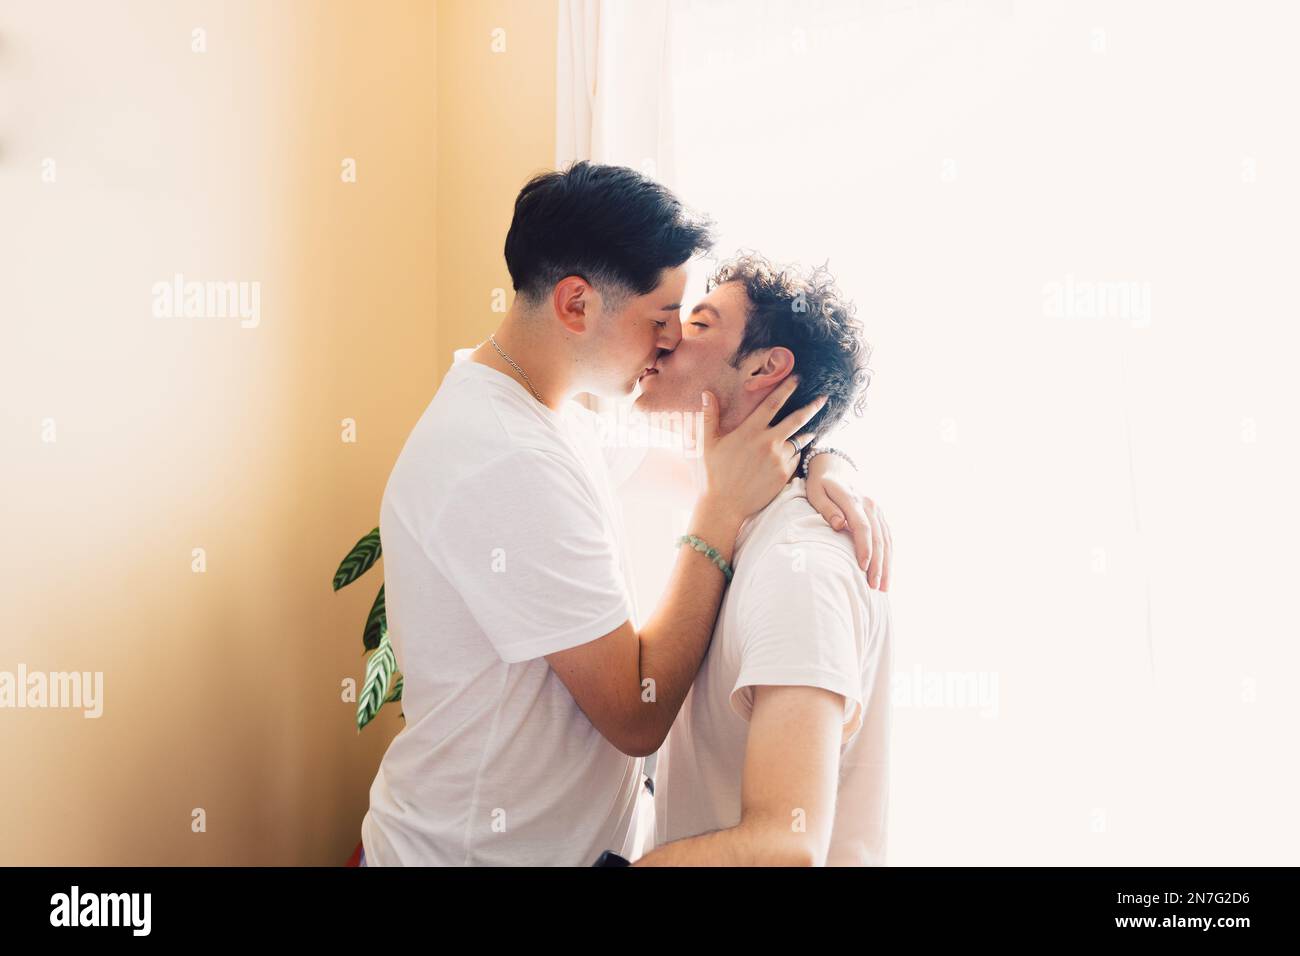 Deux hommes gays portant des t-shirts blancs, bisous romantique sur la bouche. Relation LGBT Banque D'Images